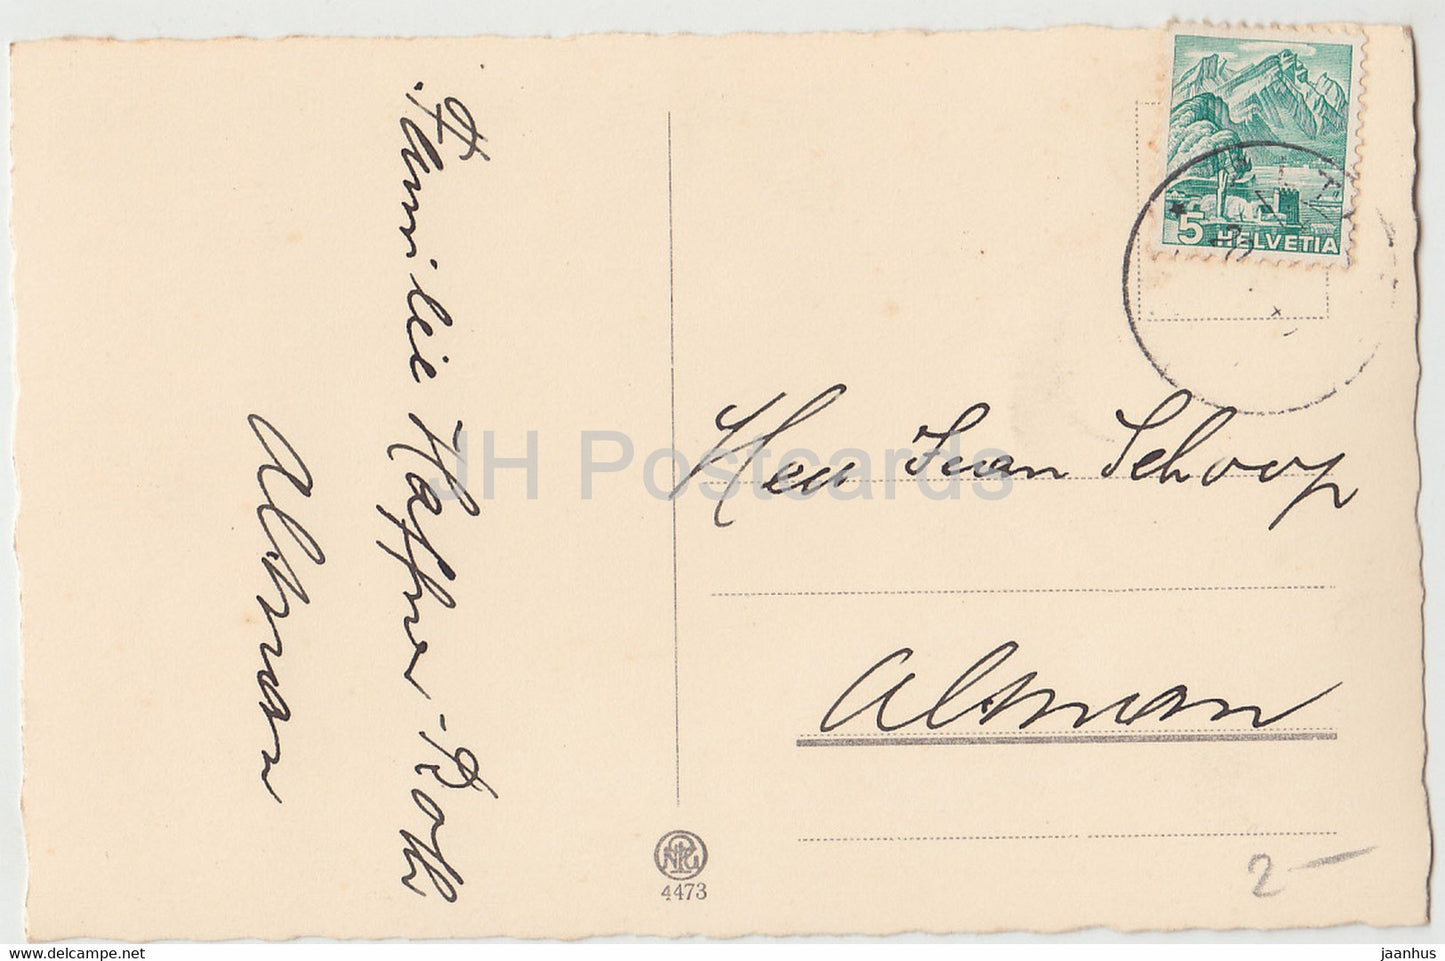 Greeting Card - Die Herzlichsten Gluckwunsche zur Konfirmation - tulip - flowers - 4473 - old postcard - Germany - used